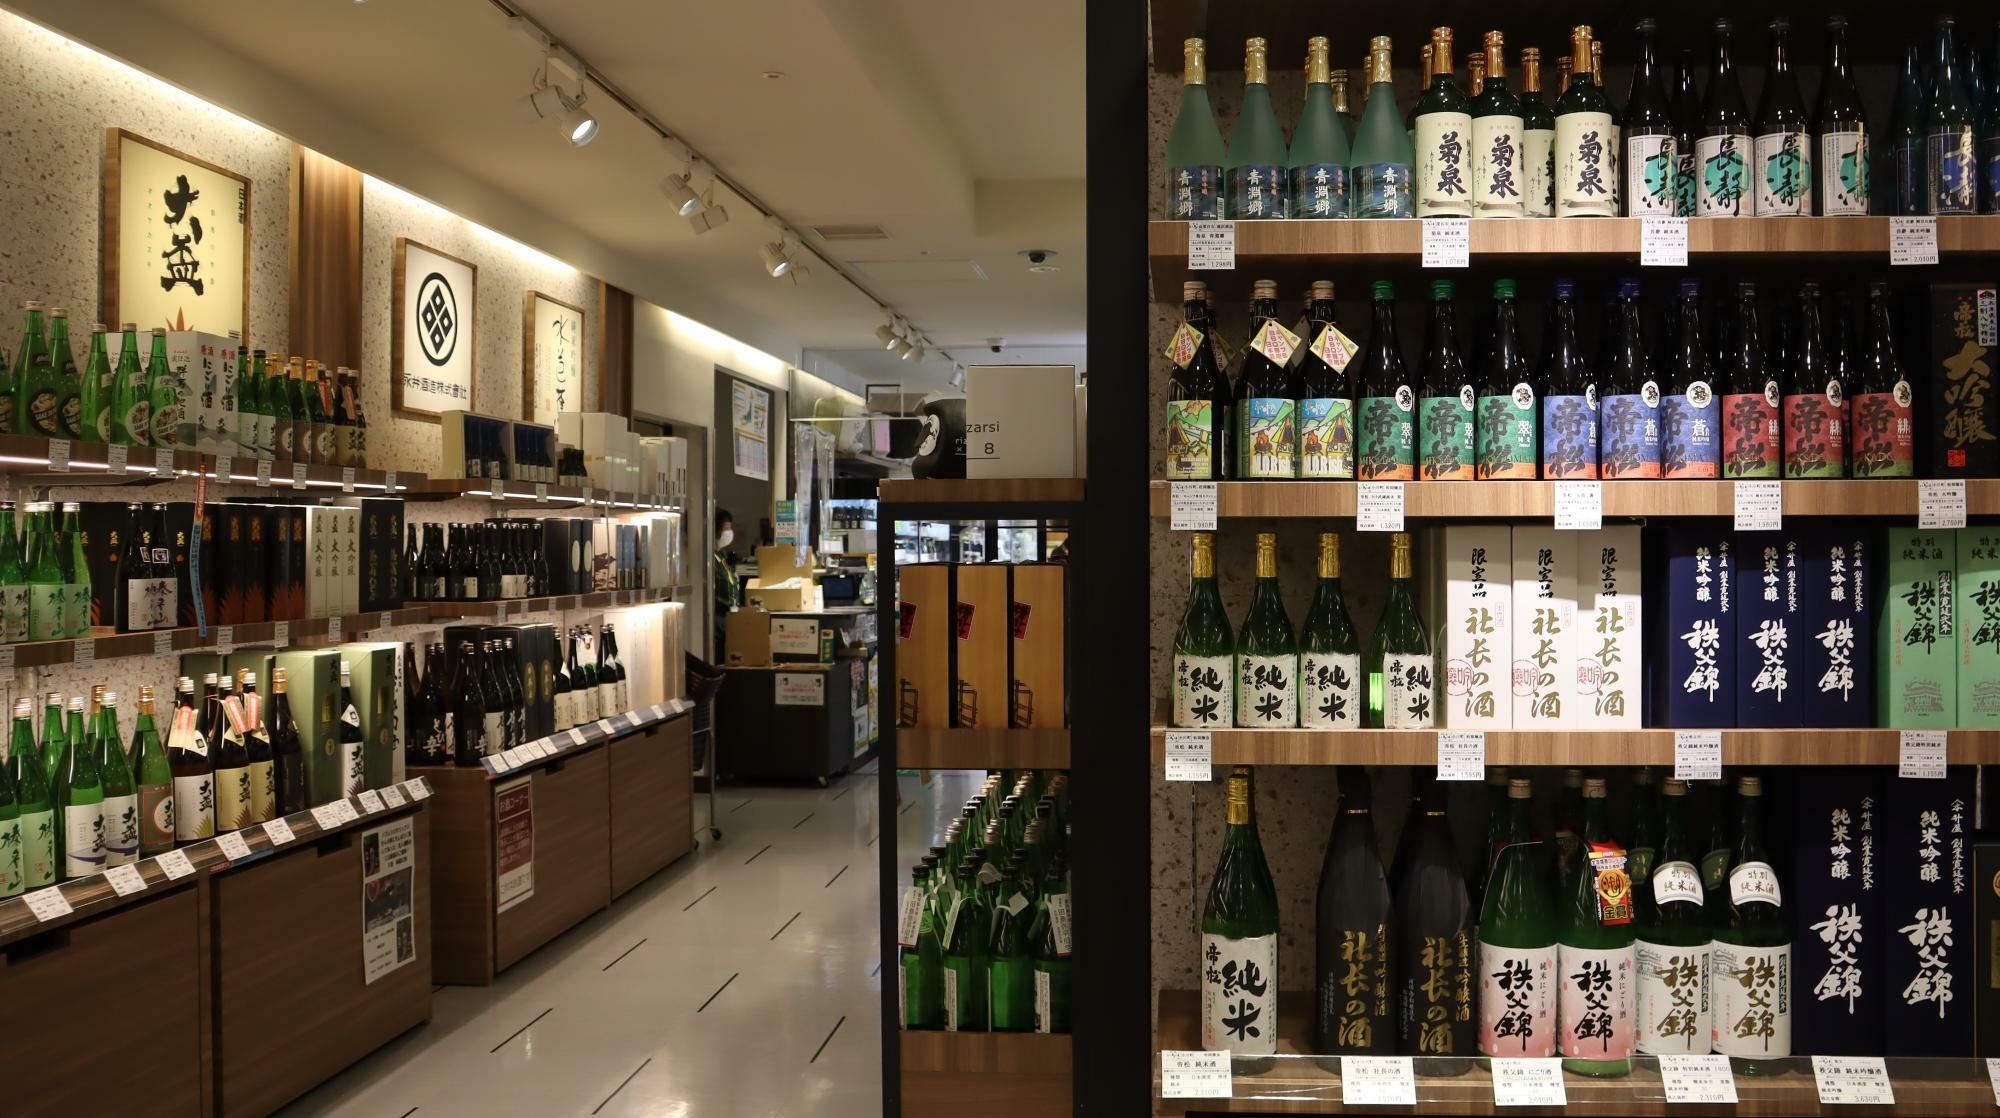 右側の棚は埼玉県のお酒